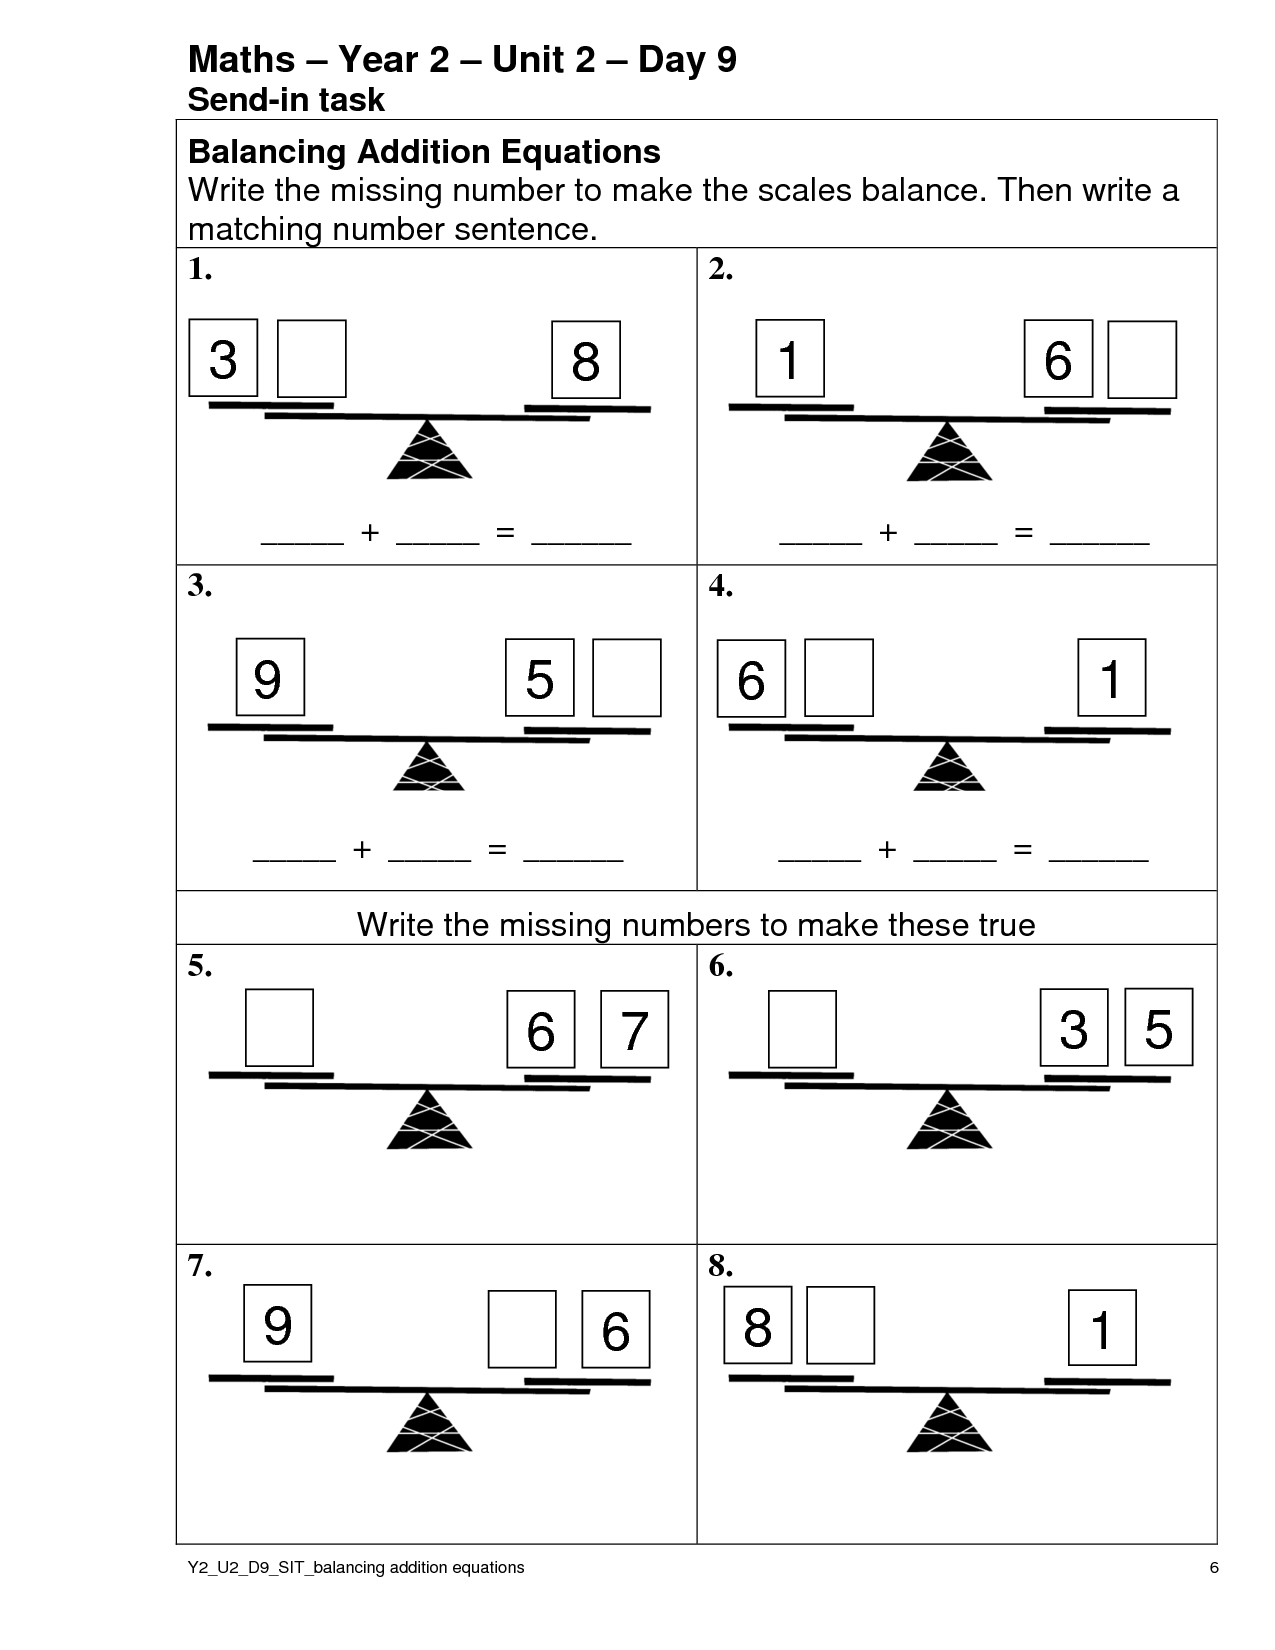 Balancing Number Sentences Worksheet Image